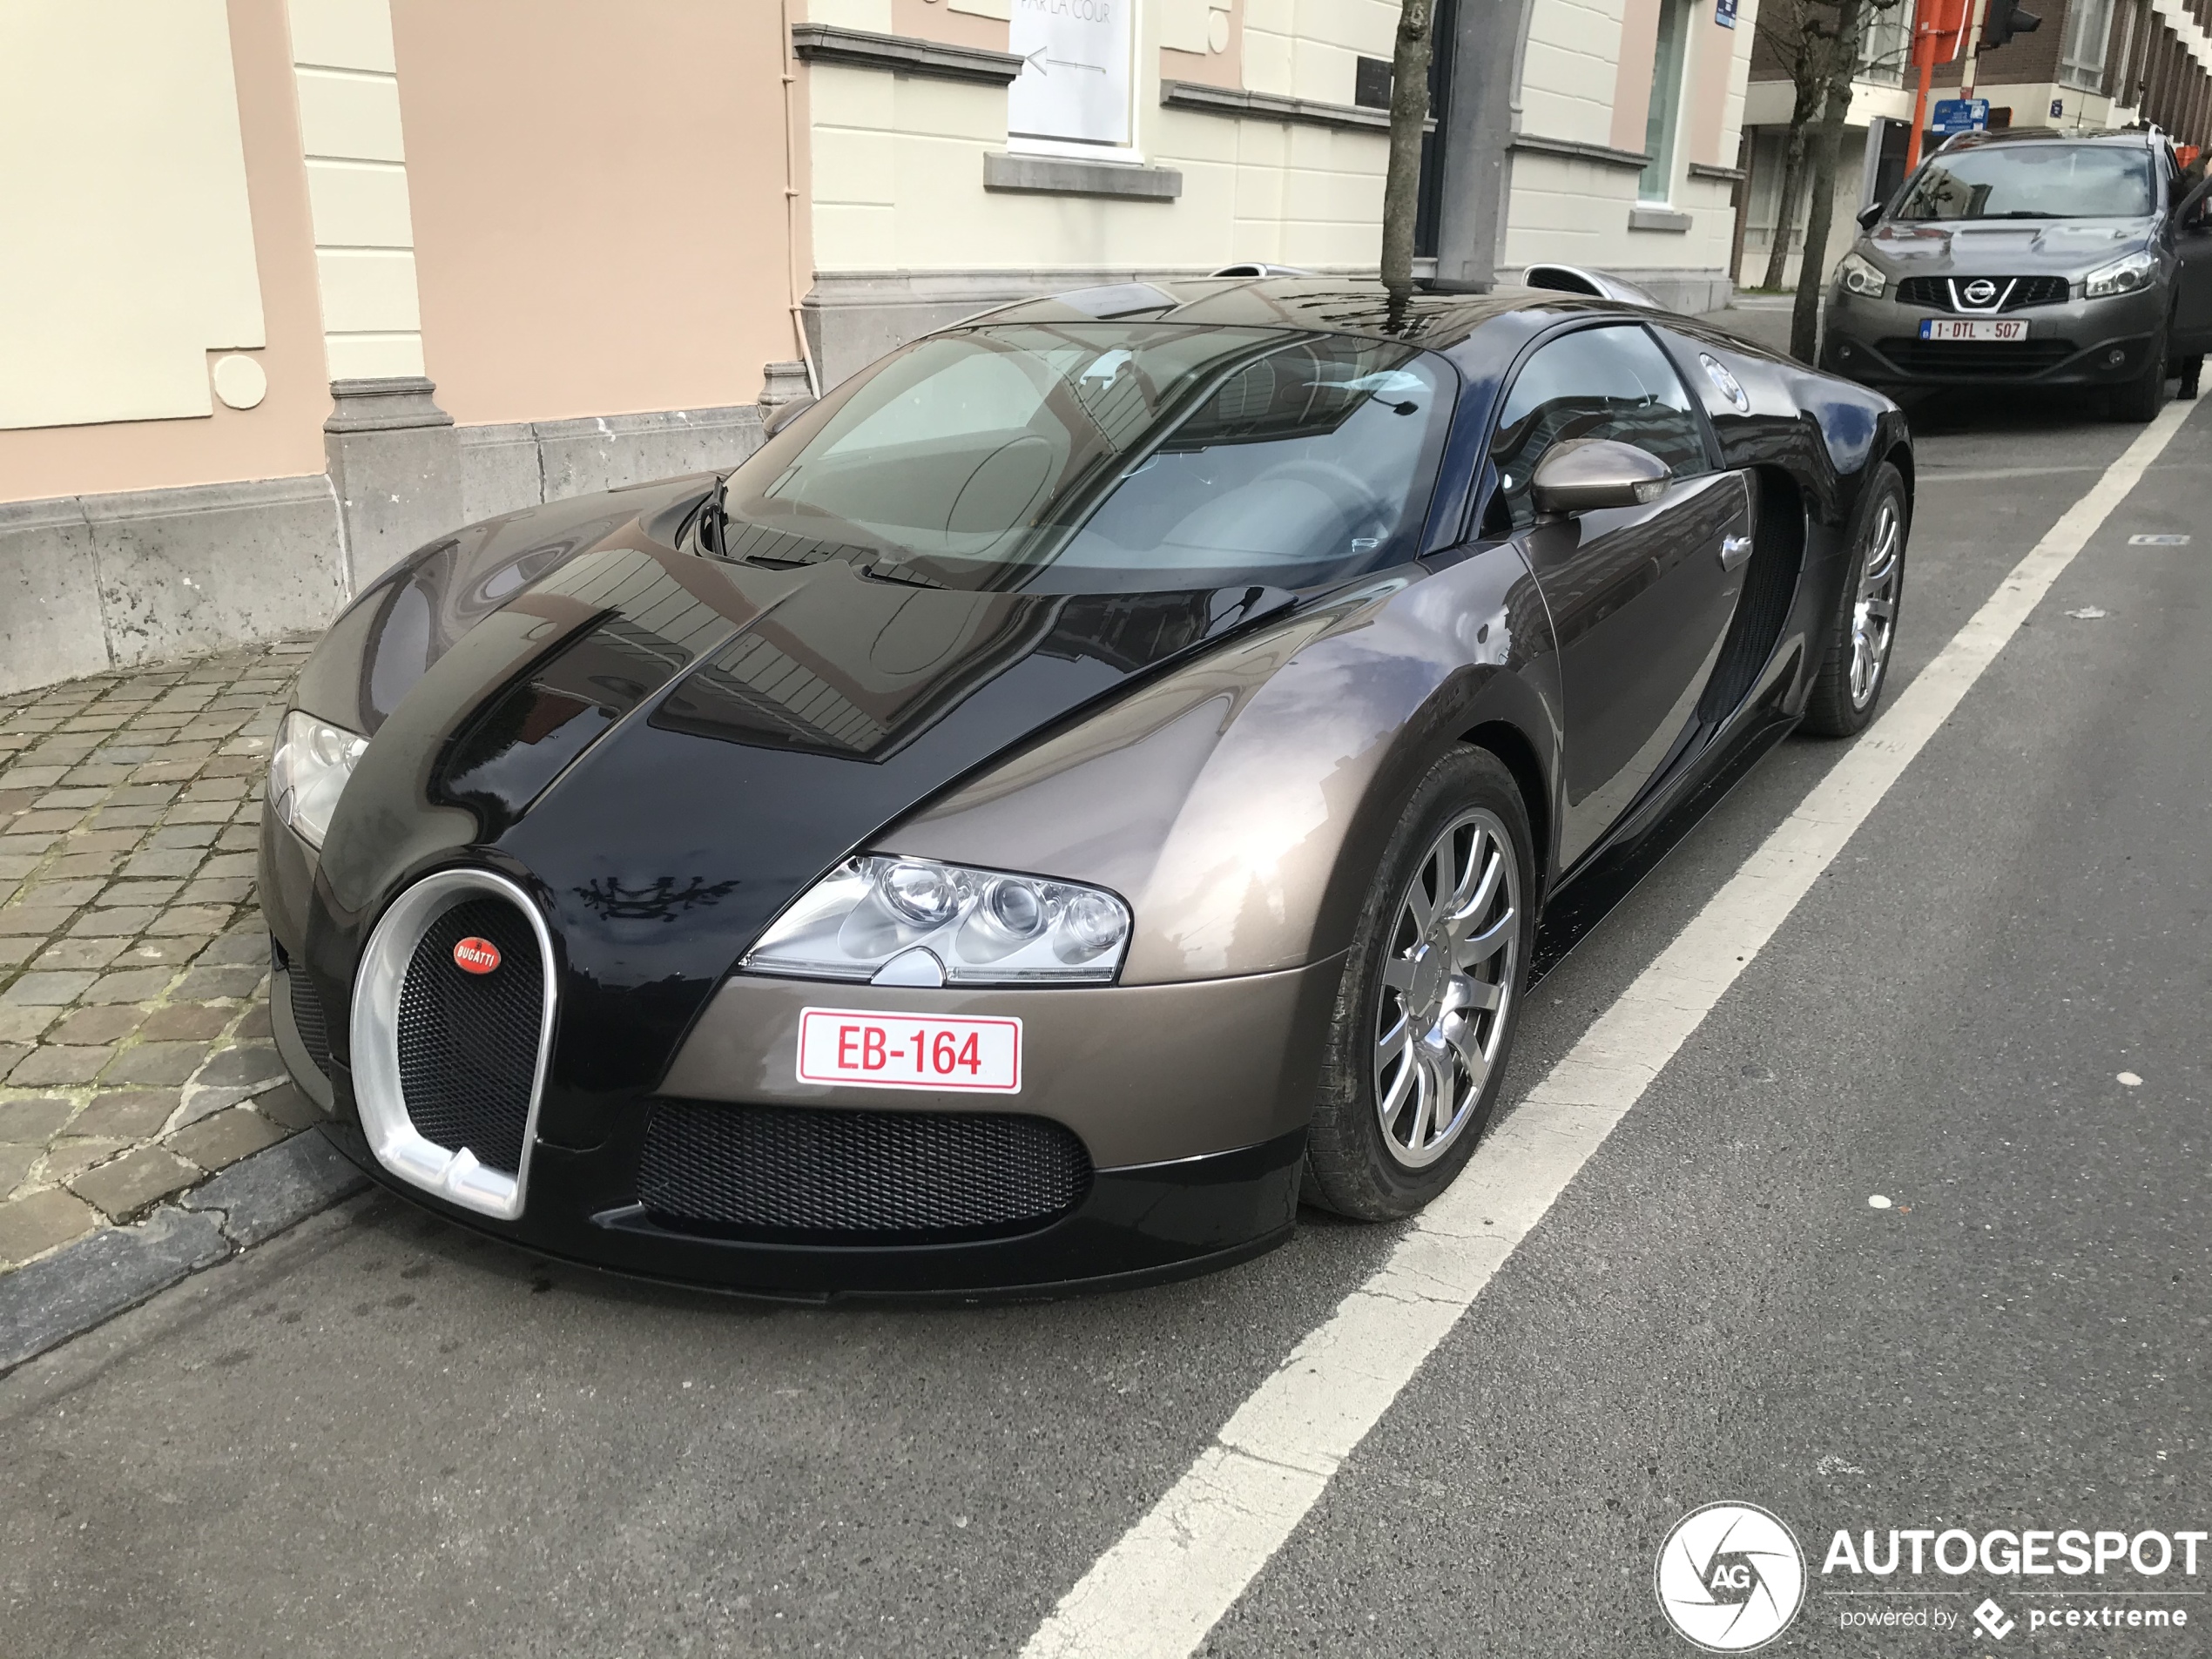 Bugatti Veyron 16.4 mocht weer eens de wielen laten rollen